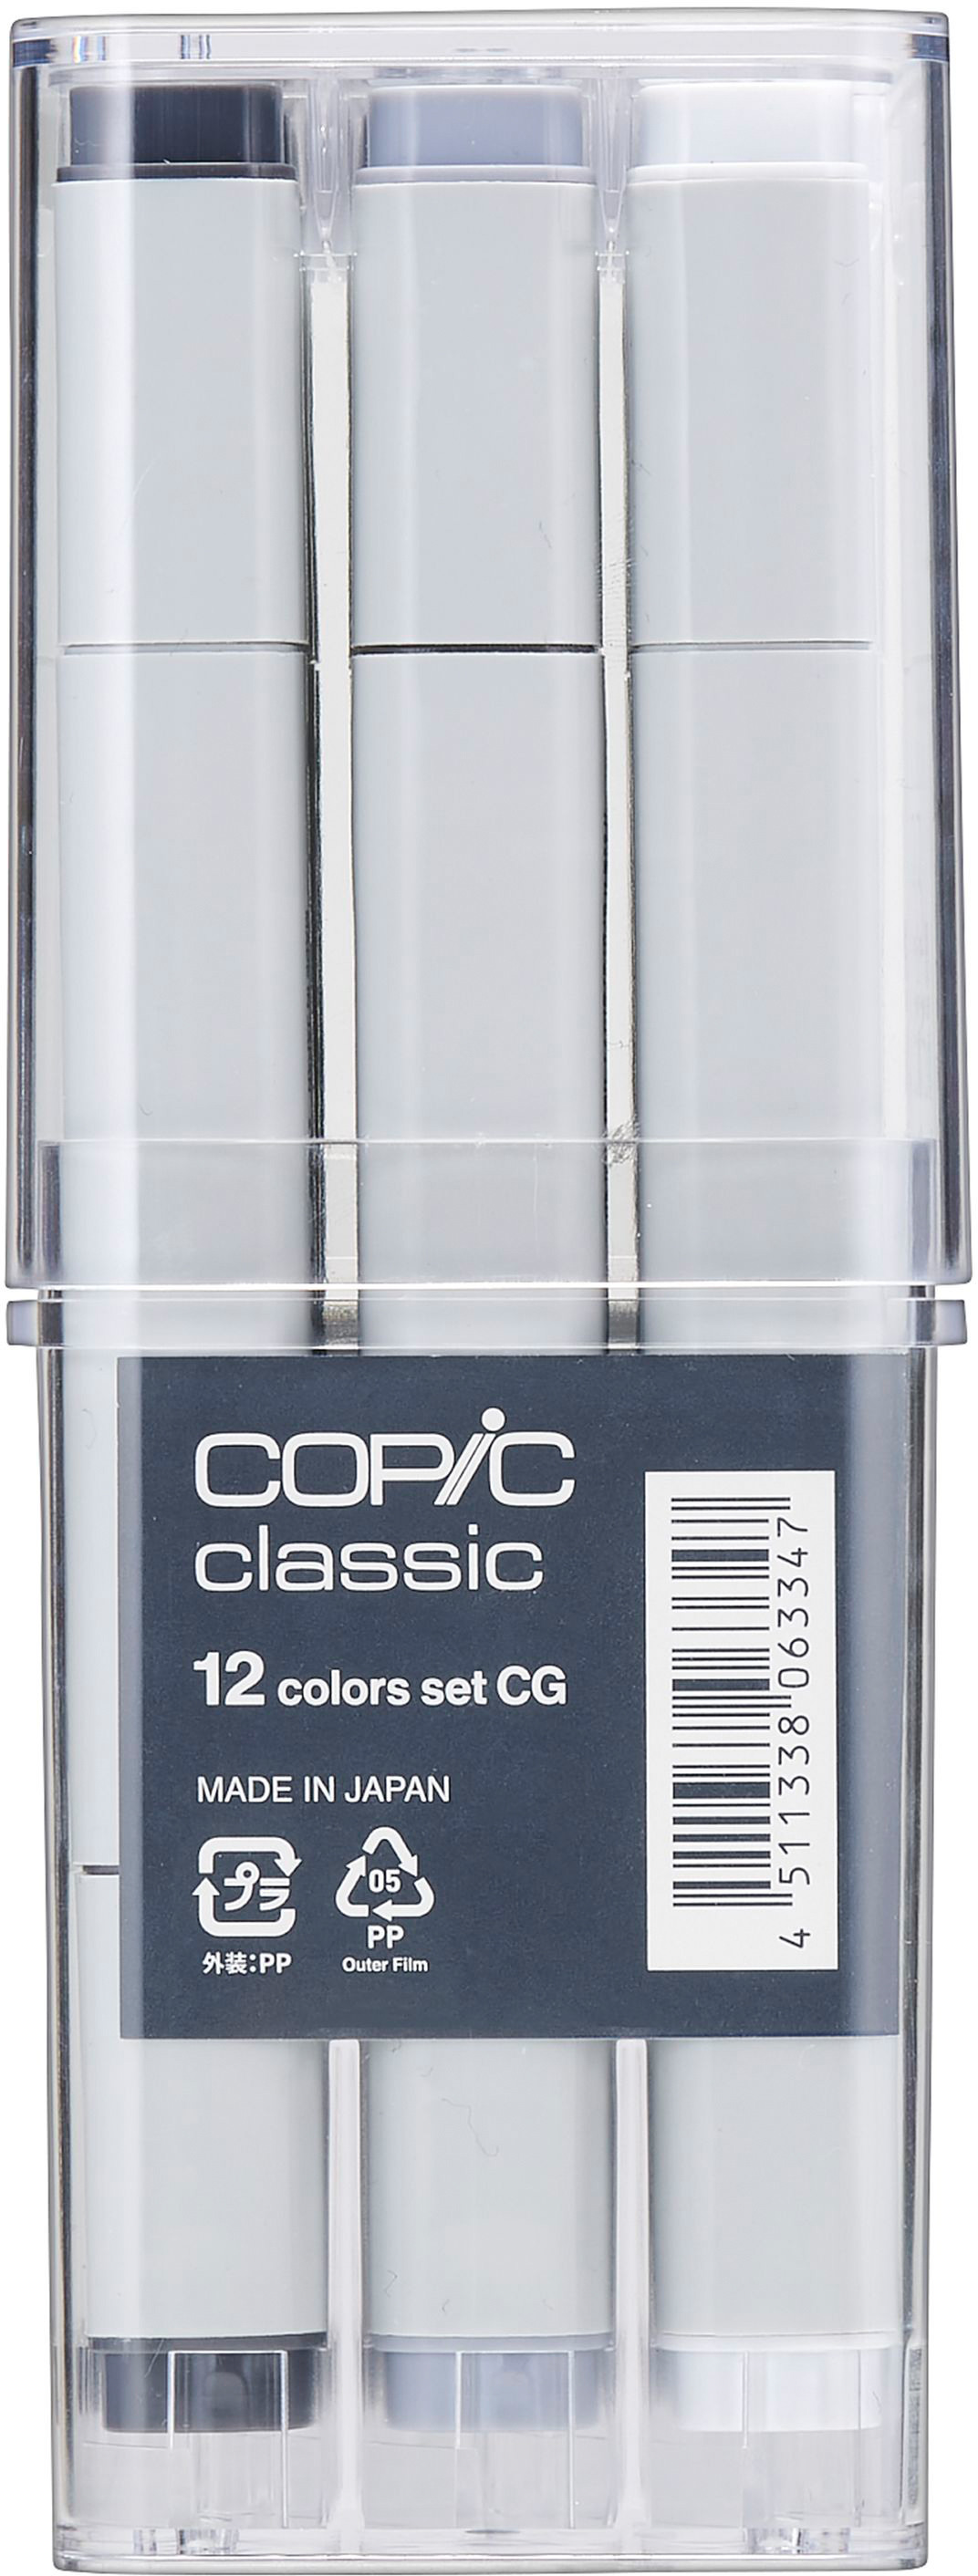 COPIC Marker Classic 20075151 grey-Set CG, 12 pcs.